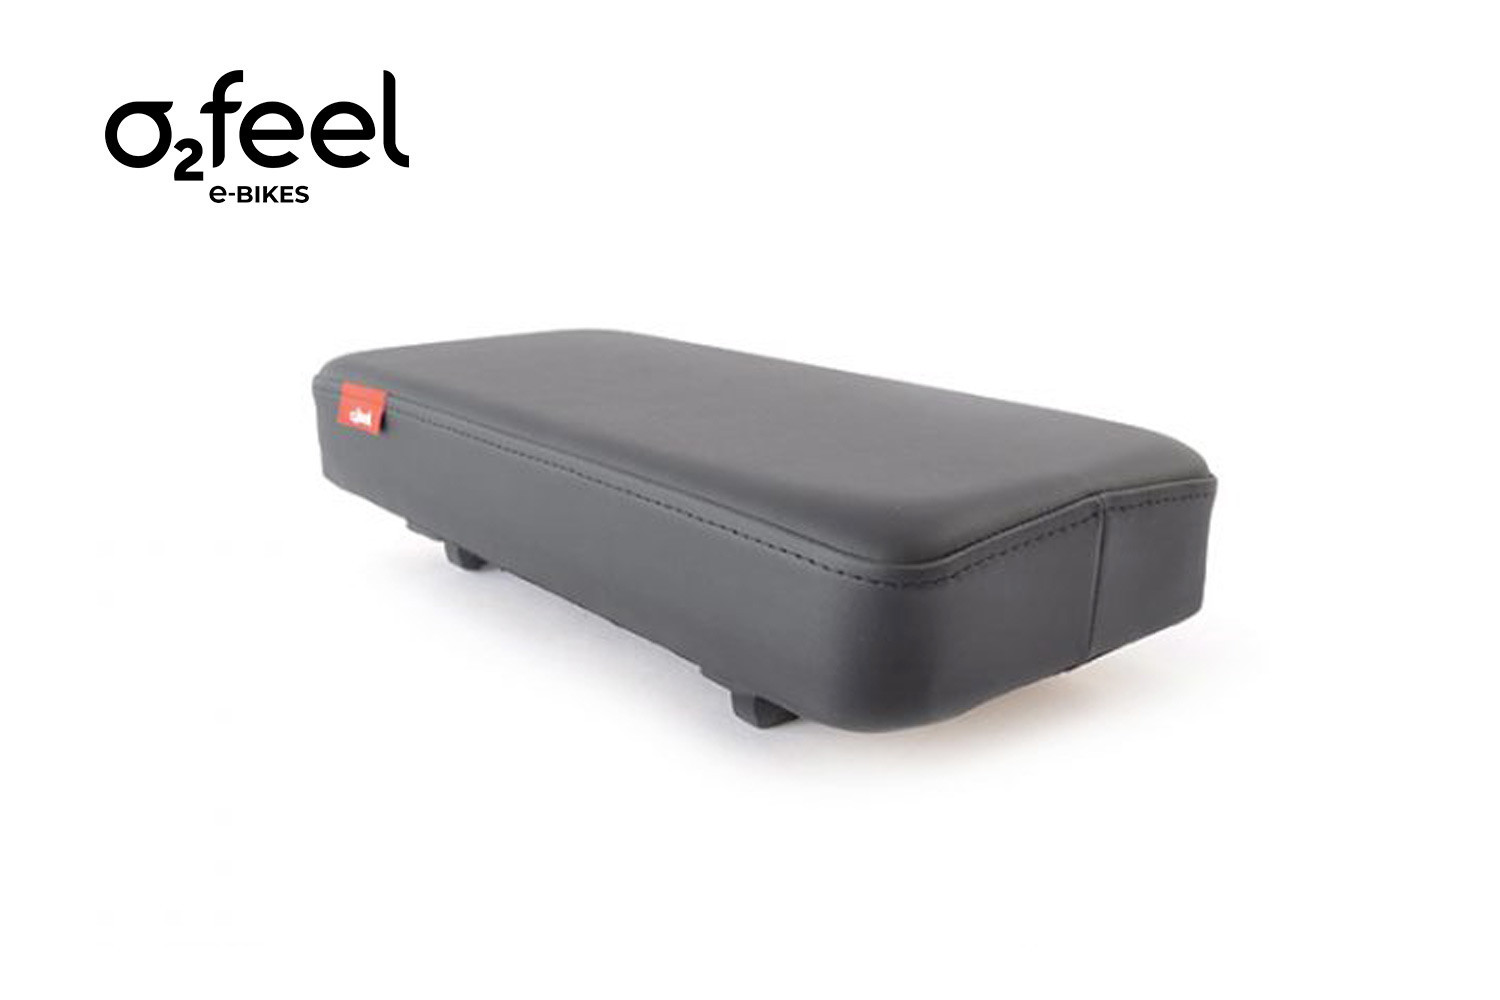 Siège vélo Cosy Seat O2feel, un coussin pour transporter des passagers sur votre vélo cargo électrique.